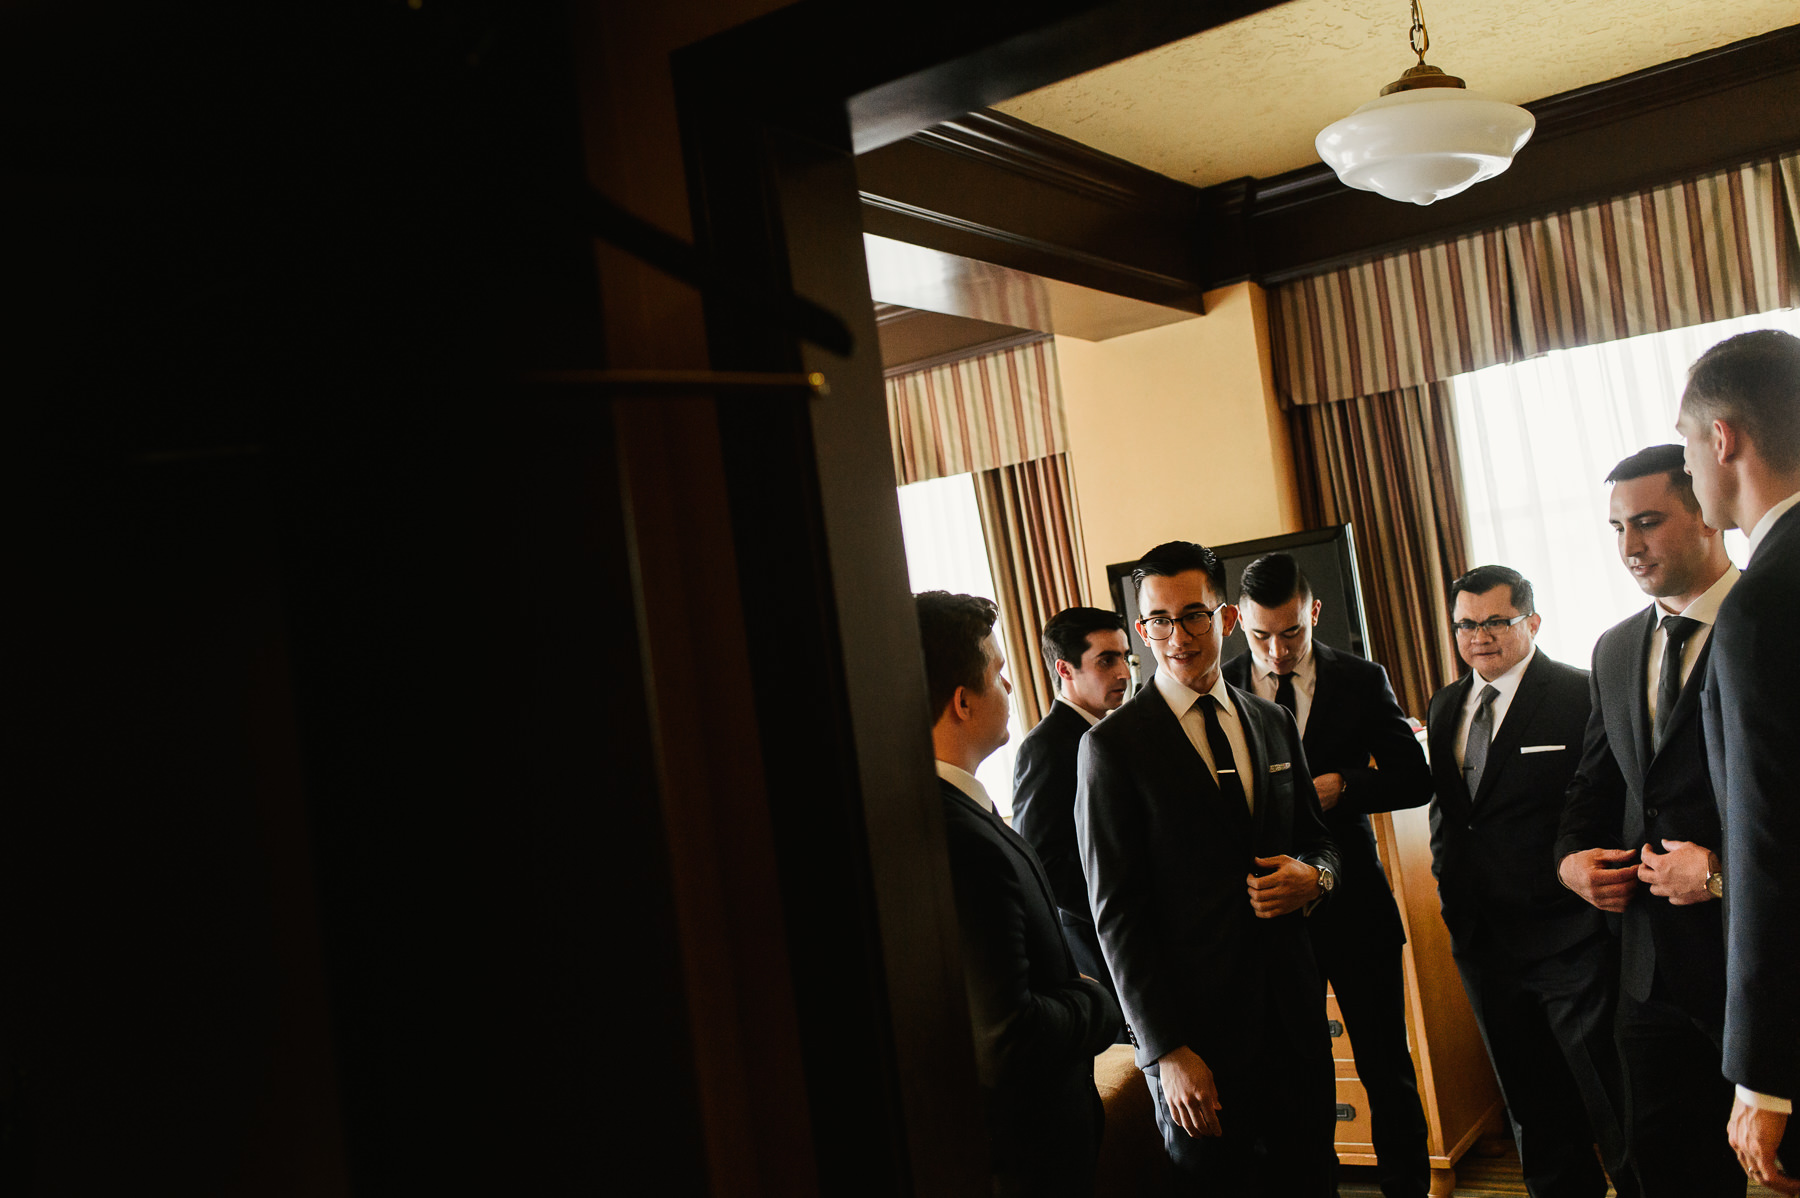 arctic club hotel grooms men